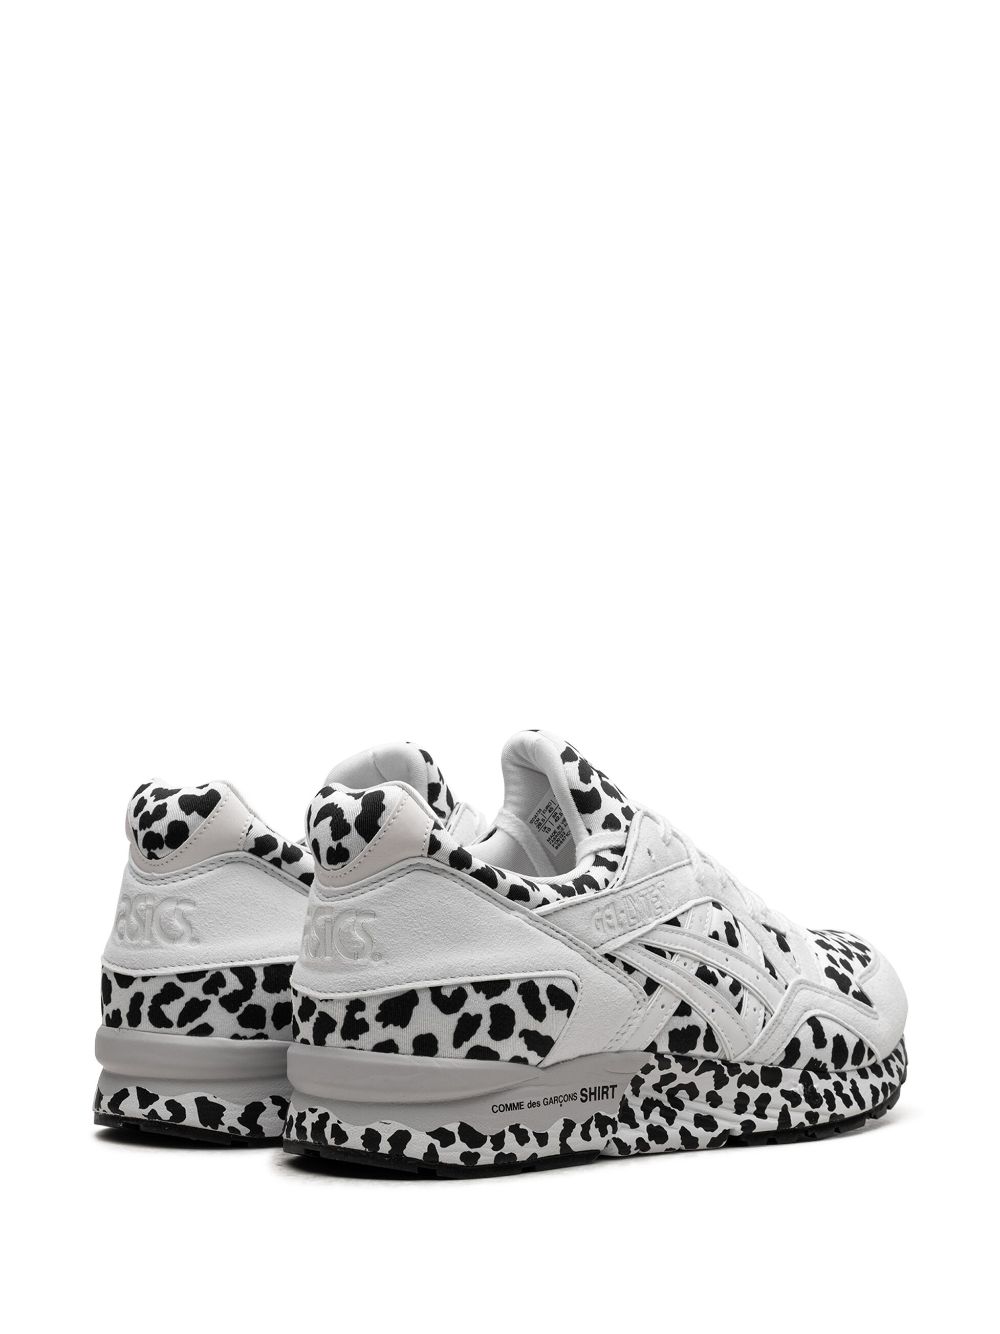 Shop Asics X Comme Des Garçons Shirt Gel Lyte 5 "white Leopard" Sneakers